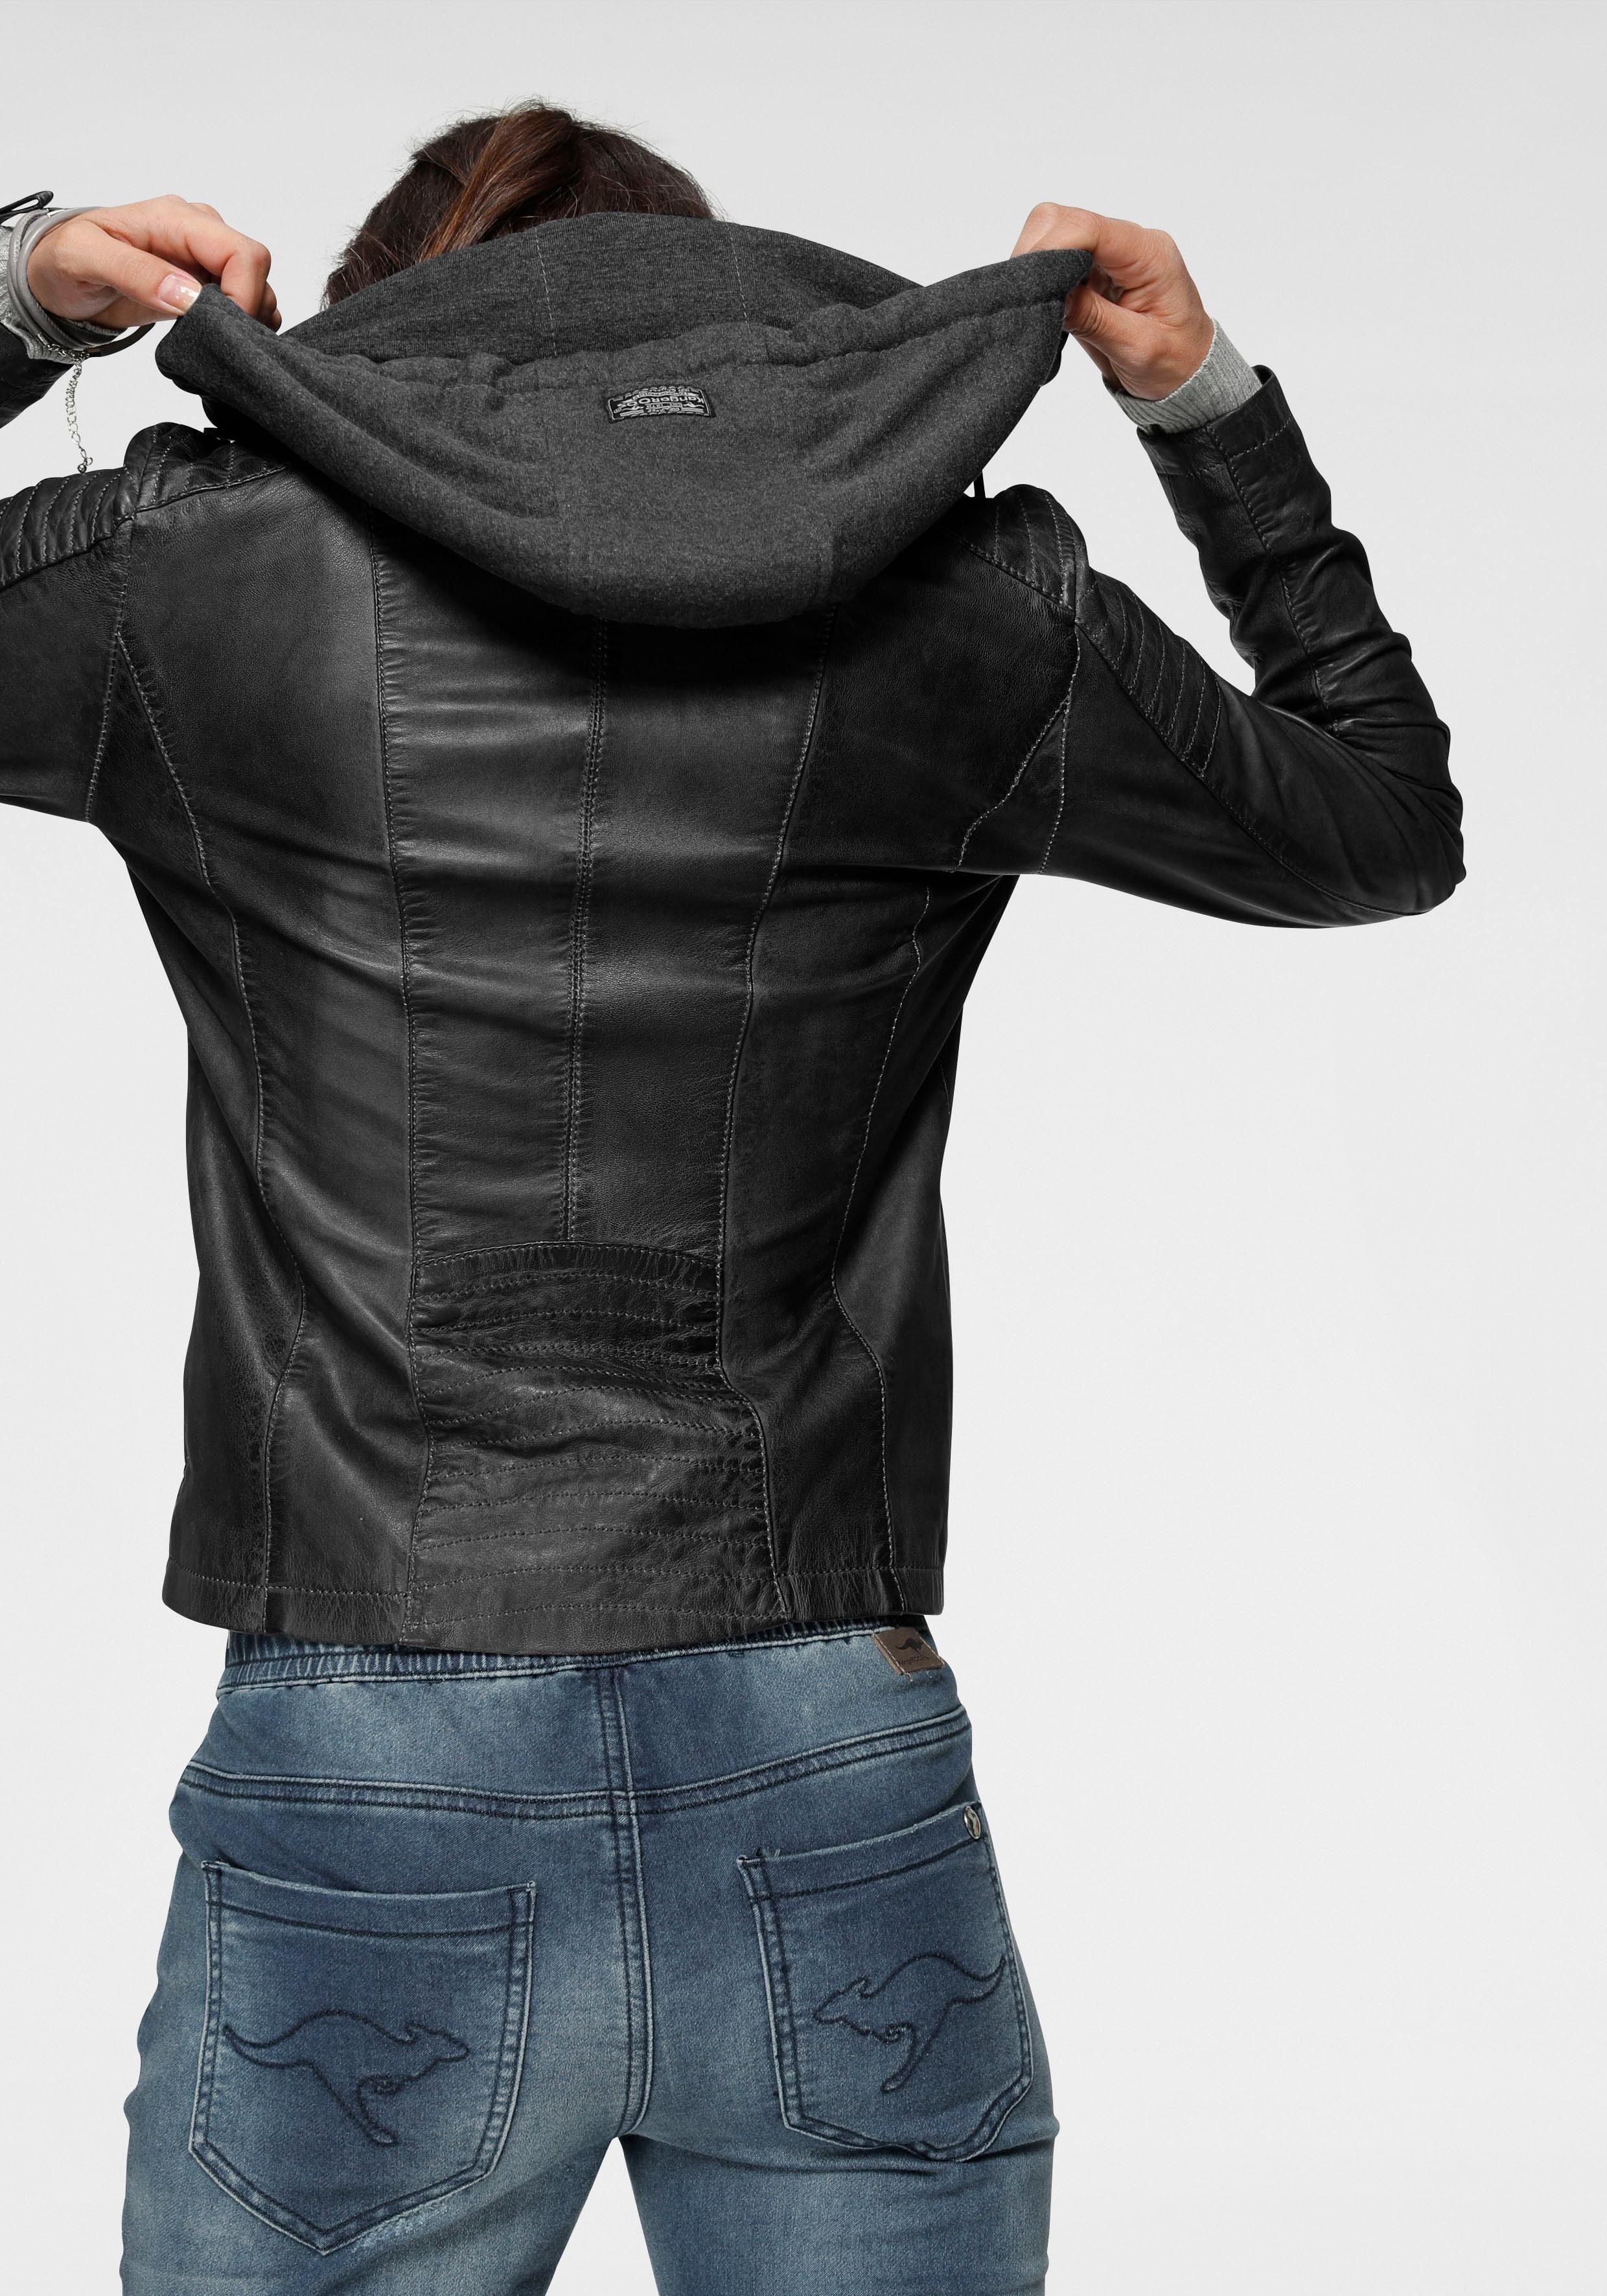 KangaROOS Lederjacke mit Kapuze aus Shirt-Ware | OTTO